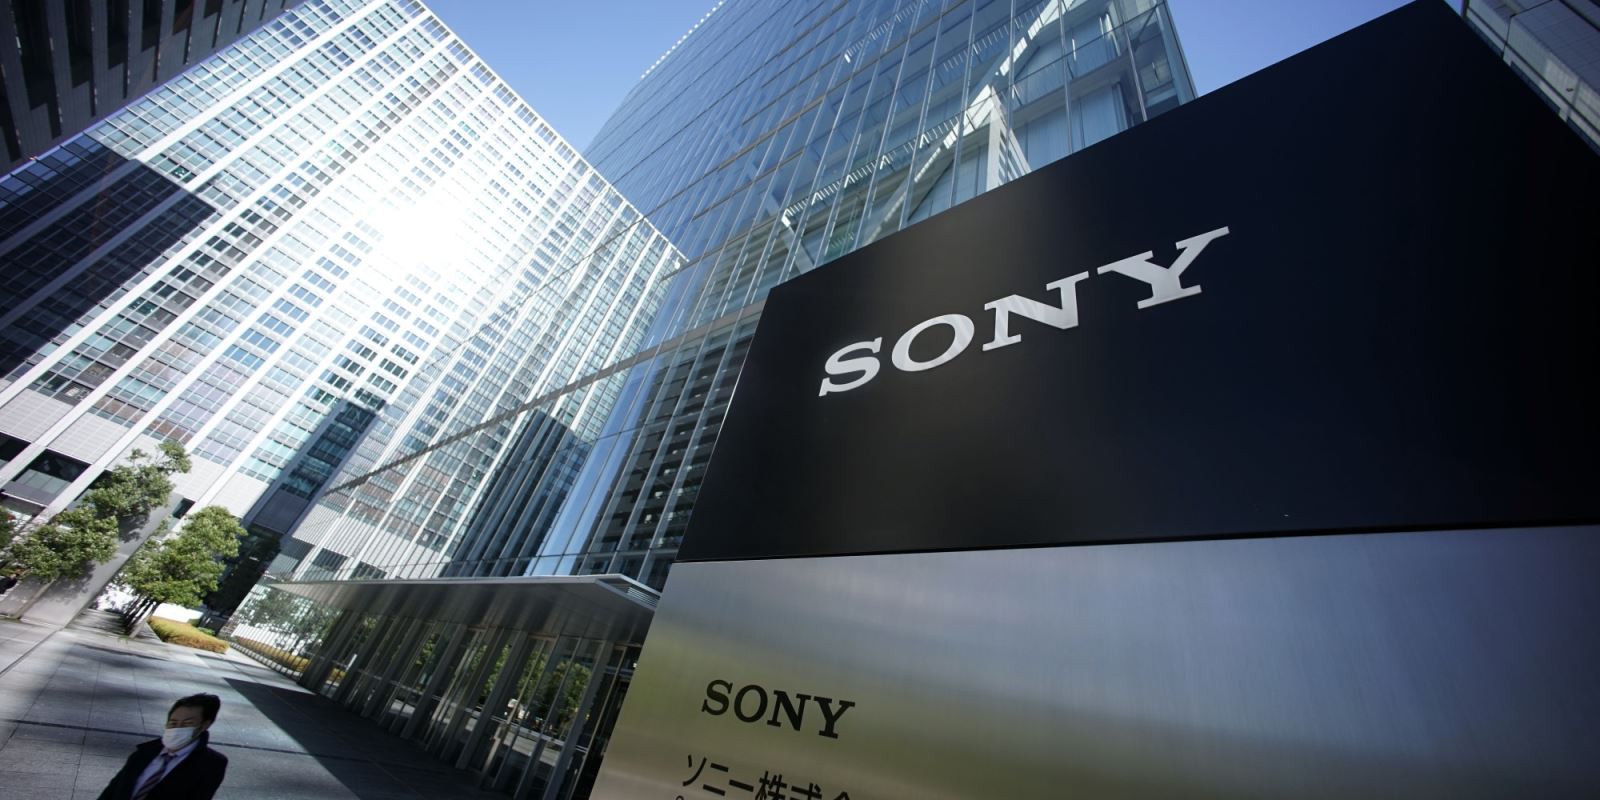 Sau Samsung và LG, Sony muốn tự sản xuất chip smartphone cho riêng mình